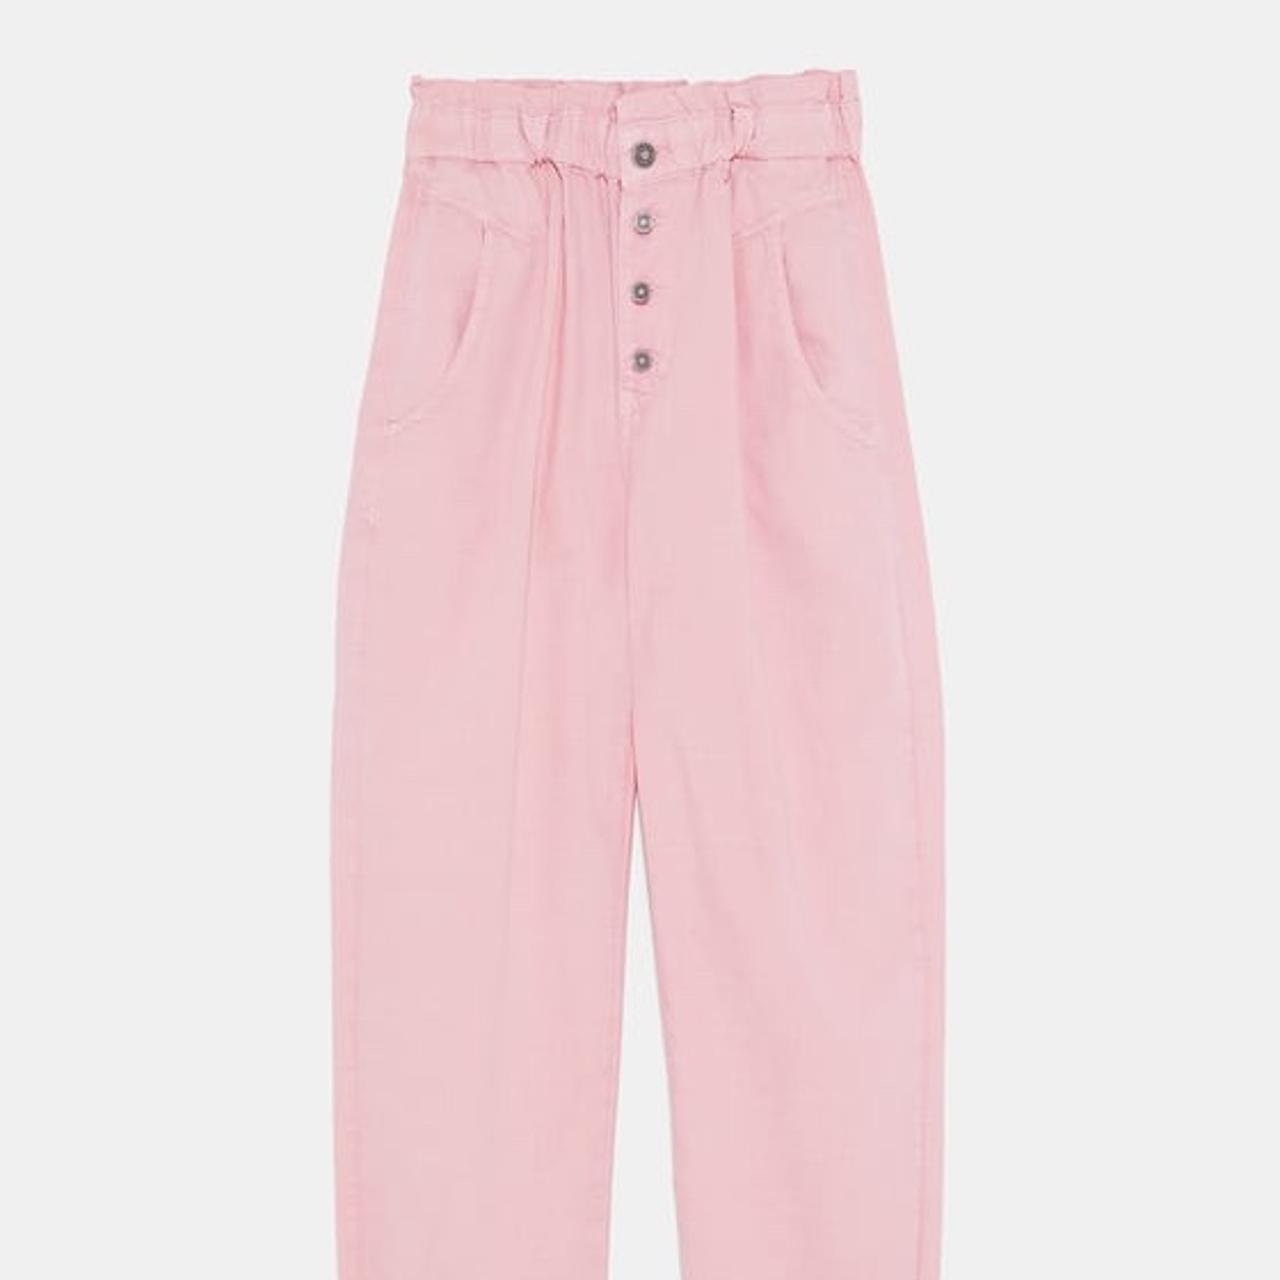 Zara Women's Trousers (2)